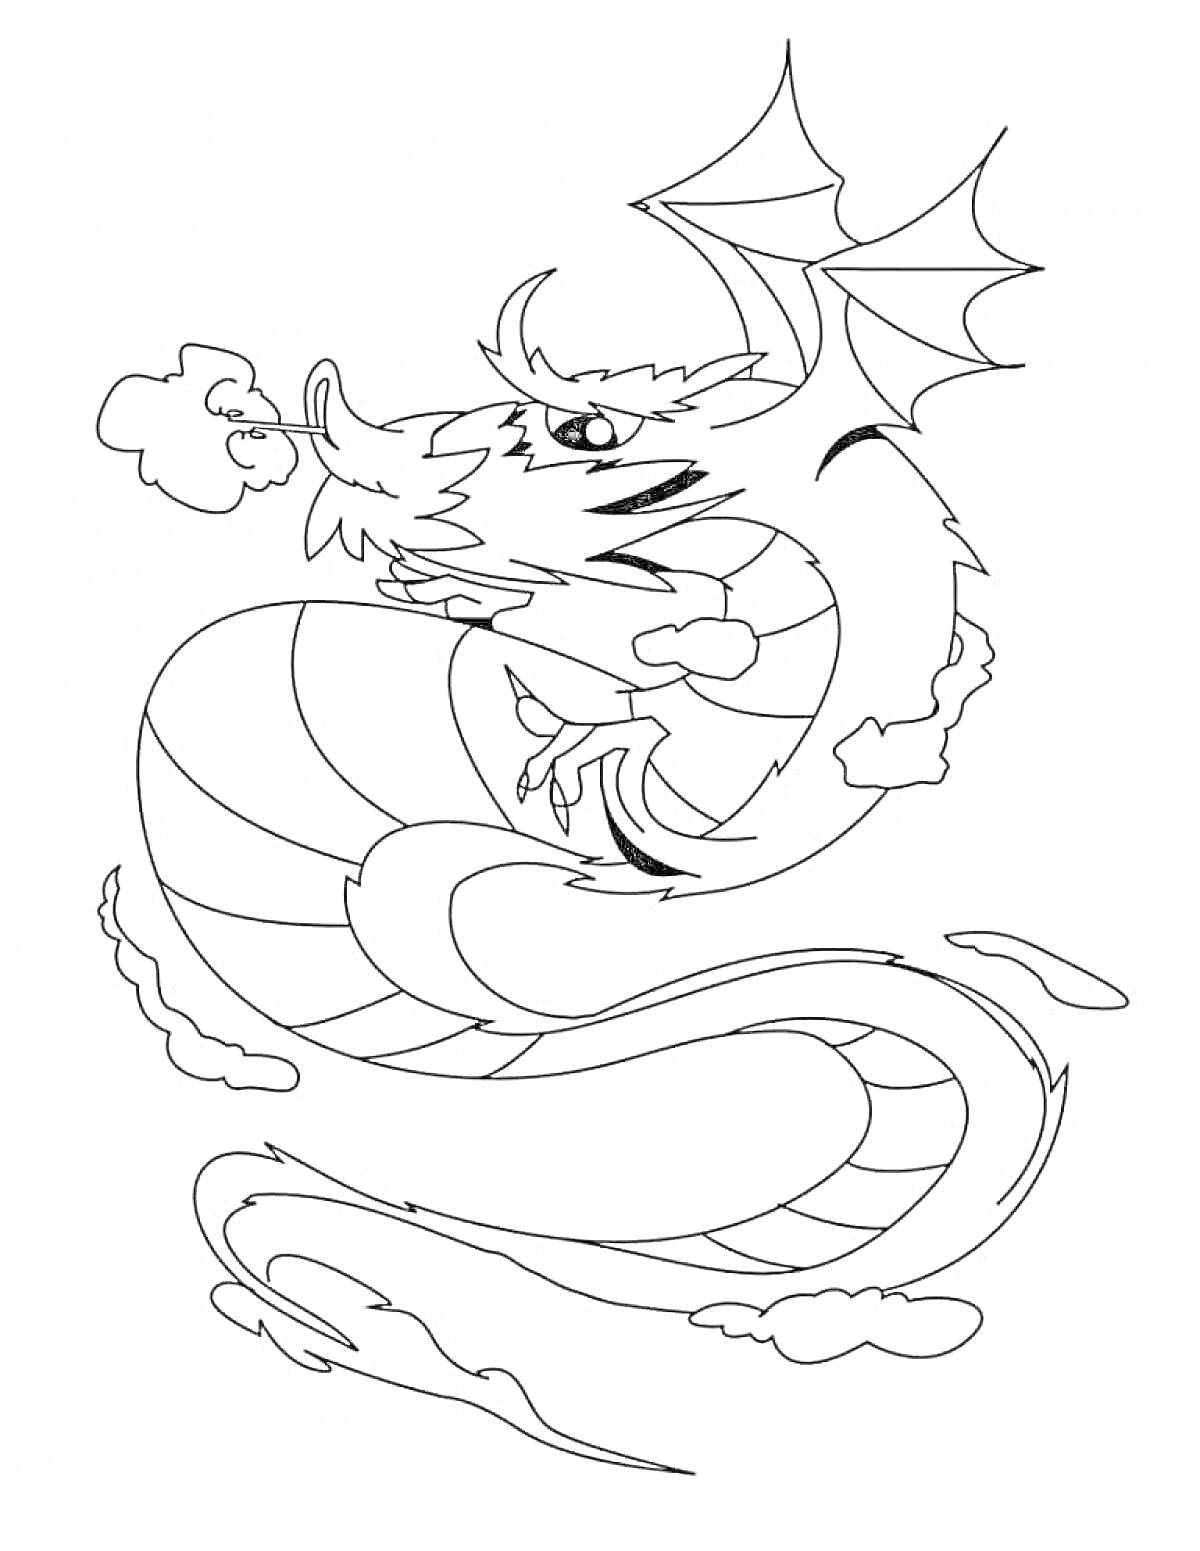 Раскраска Китайский дракон с крыльями, дышащий огнем